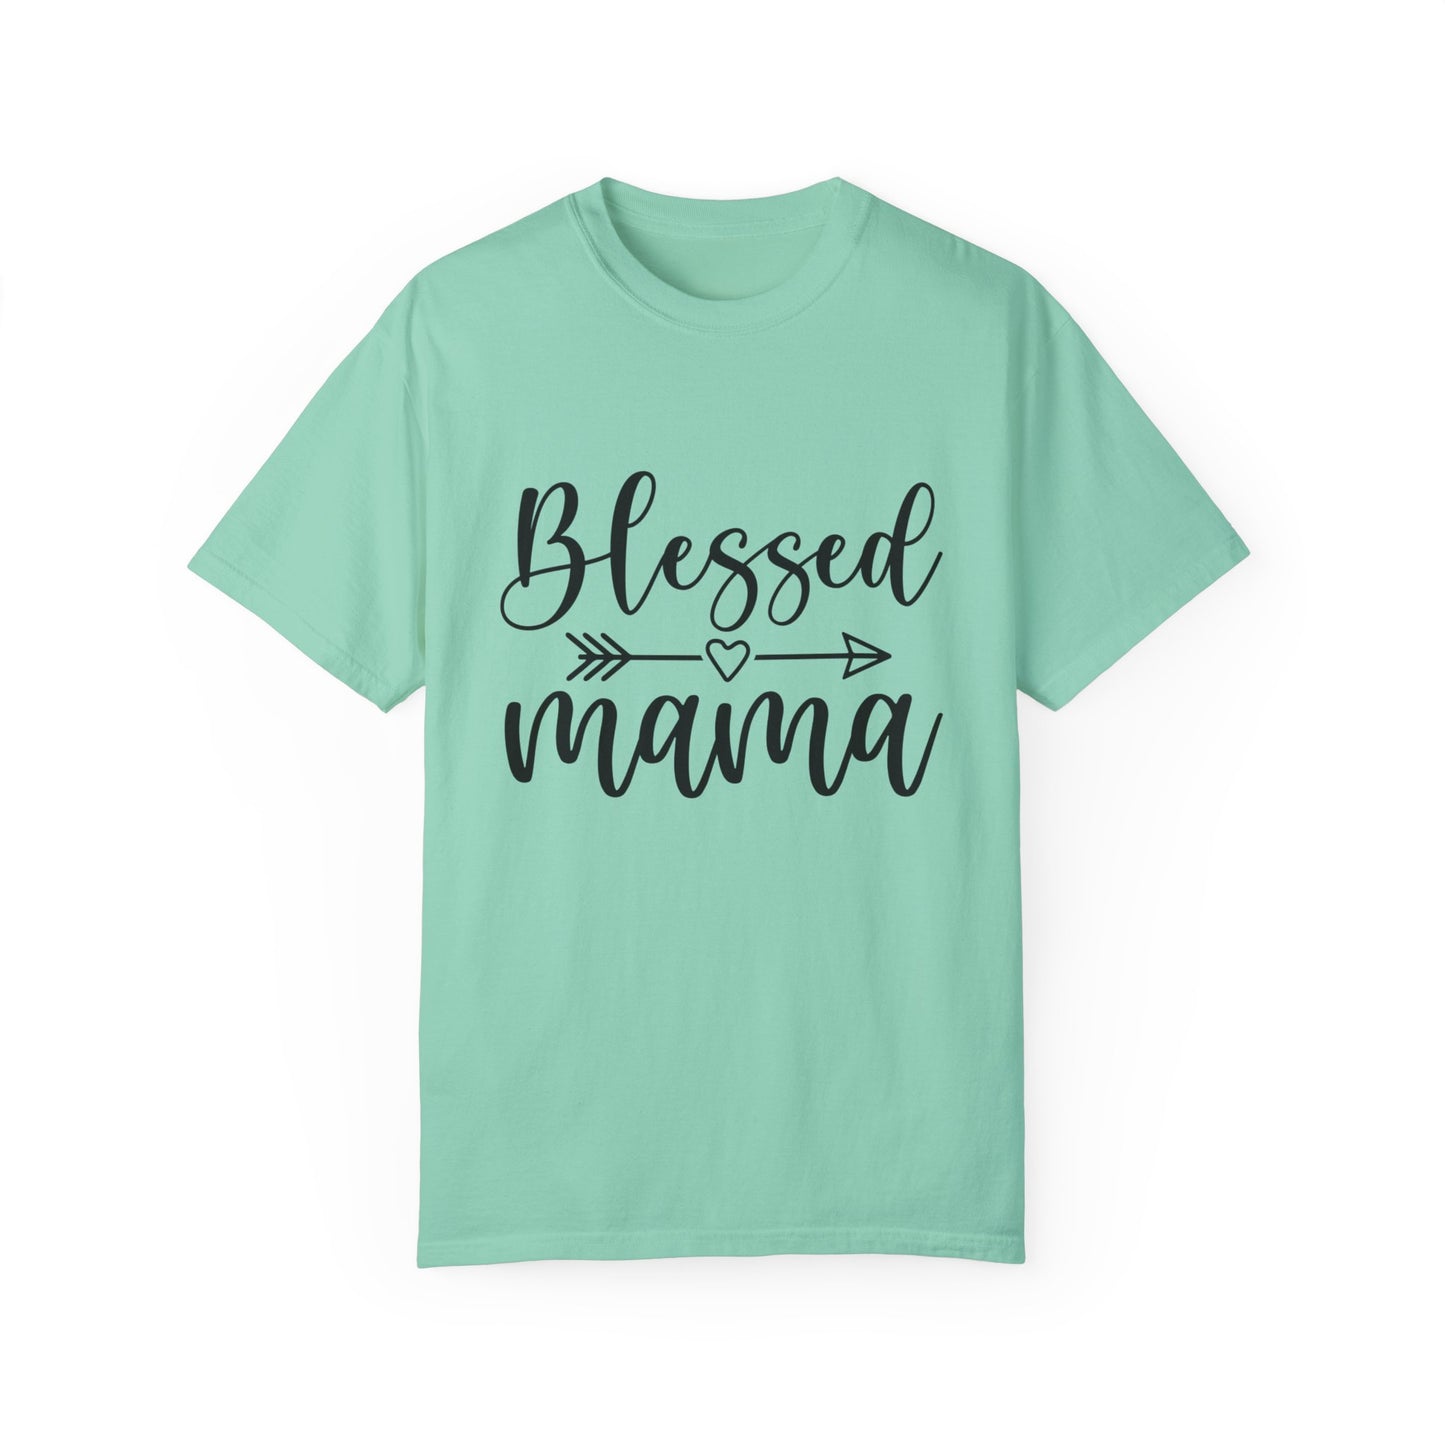 For Grandma | Unisex Garment-Dyed T-shirt